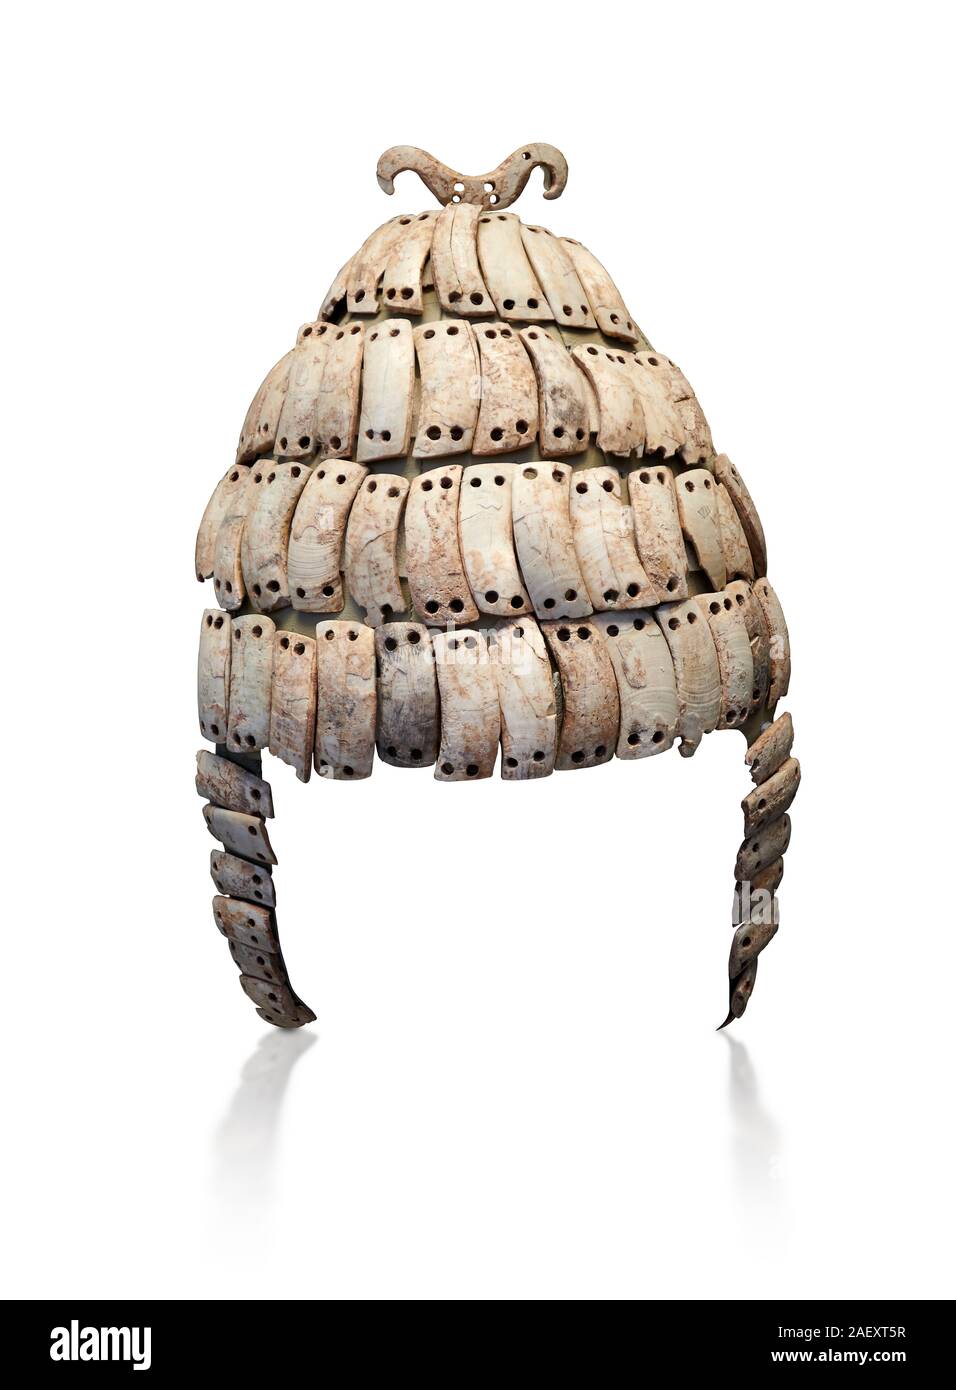 Les verrats mycénienne tusk helmet à partir de la chambre 515 tombe, Mycènes, 16 100 BC. Musée National Archéologique d'Athènes. Cat No 6507. Arrière-plan blanc. E Banque D'Images